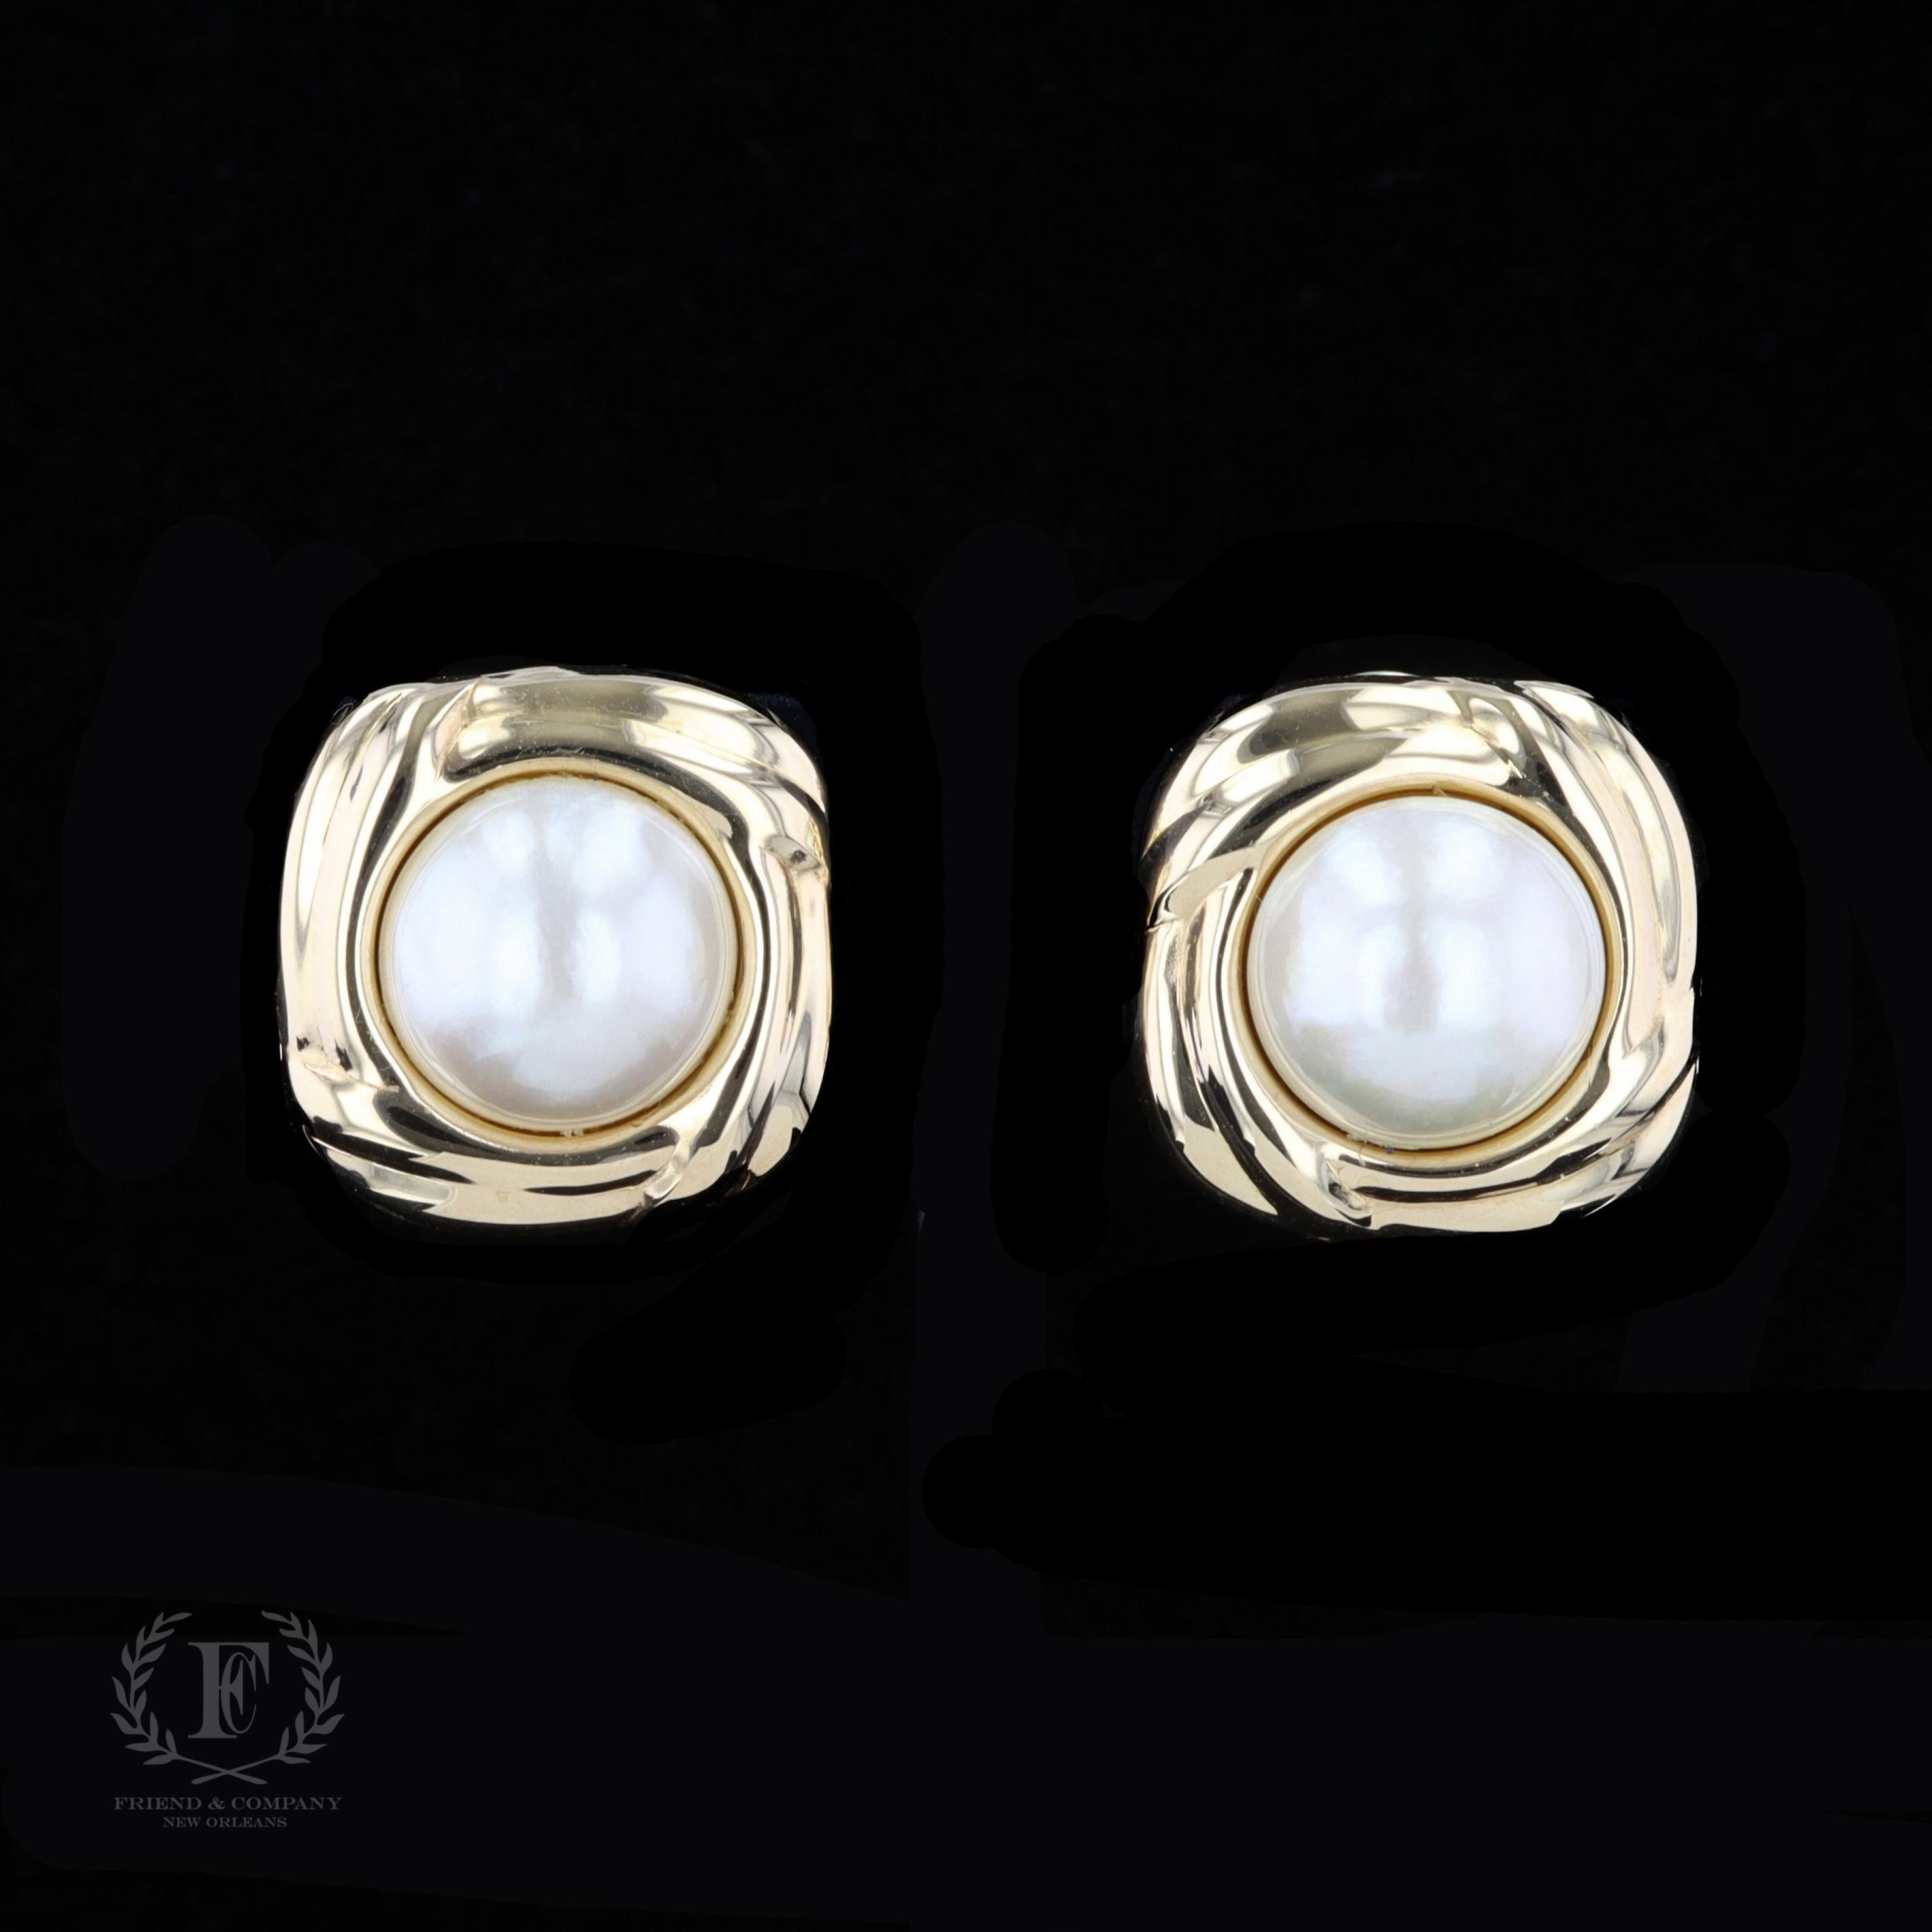 Ein elegantes und zeitloses Paar Ohrringe, das Ihre Sammlung bereichern wird. Dieses schöne Paar Ohrringe aus 14-karätigem Gelbgold besteht aus zwei runden Mabe-Perlen mit einer Größe von je 13-14 Millimetern. Die Ohrringe sind mit einem